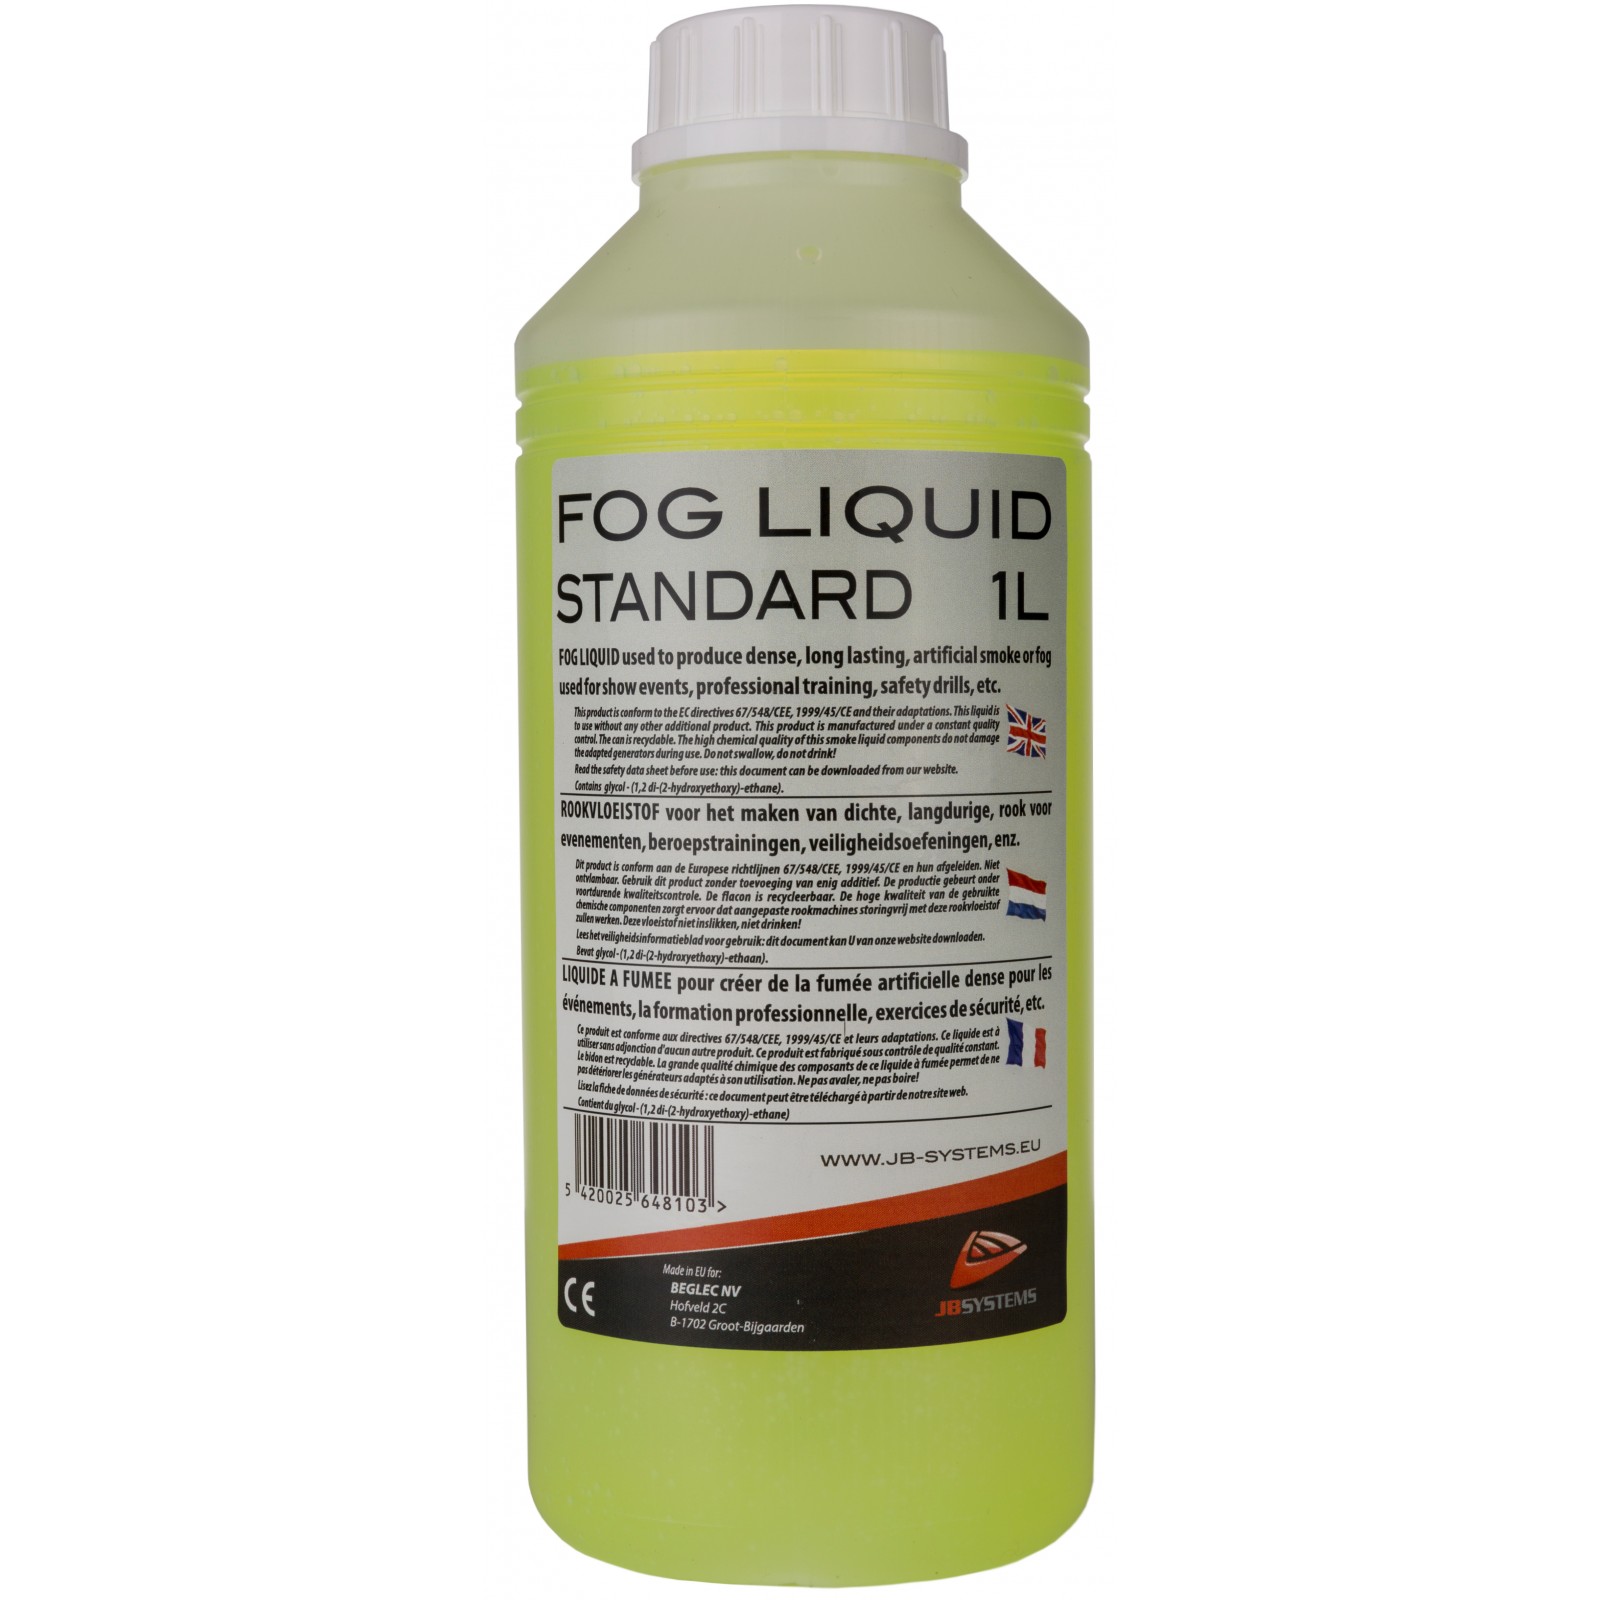 FOG LIQUID STD 1L, fogger liquid standard, 1L